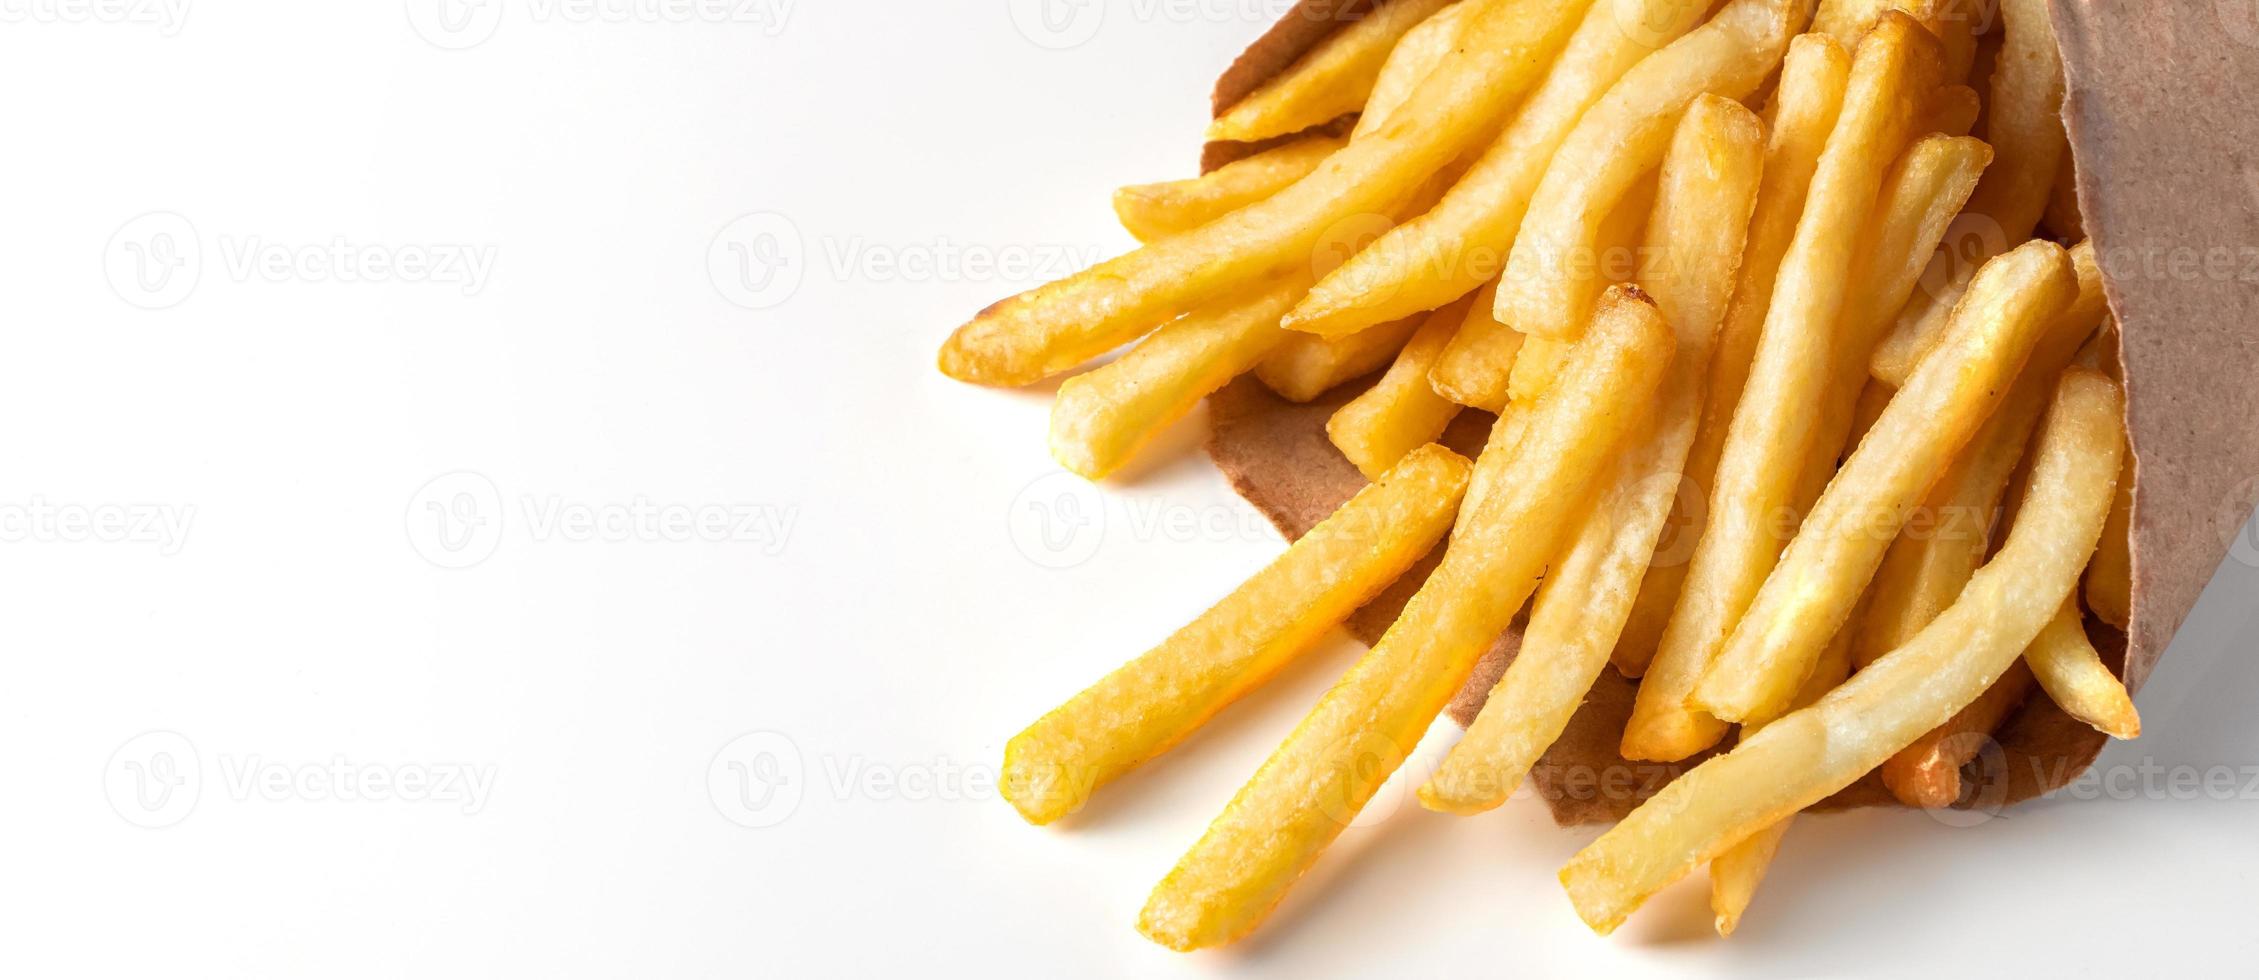 apetitosas papas fritas sobre fondo blanco. comida rápida caliente. lugar para el texto. foto